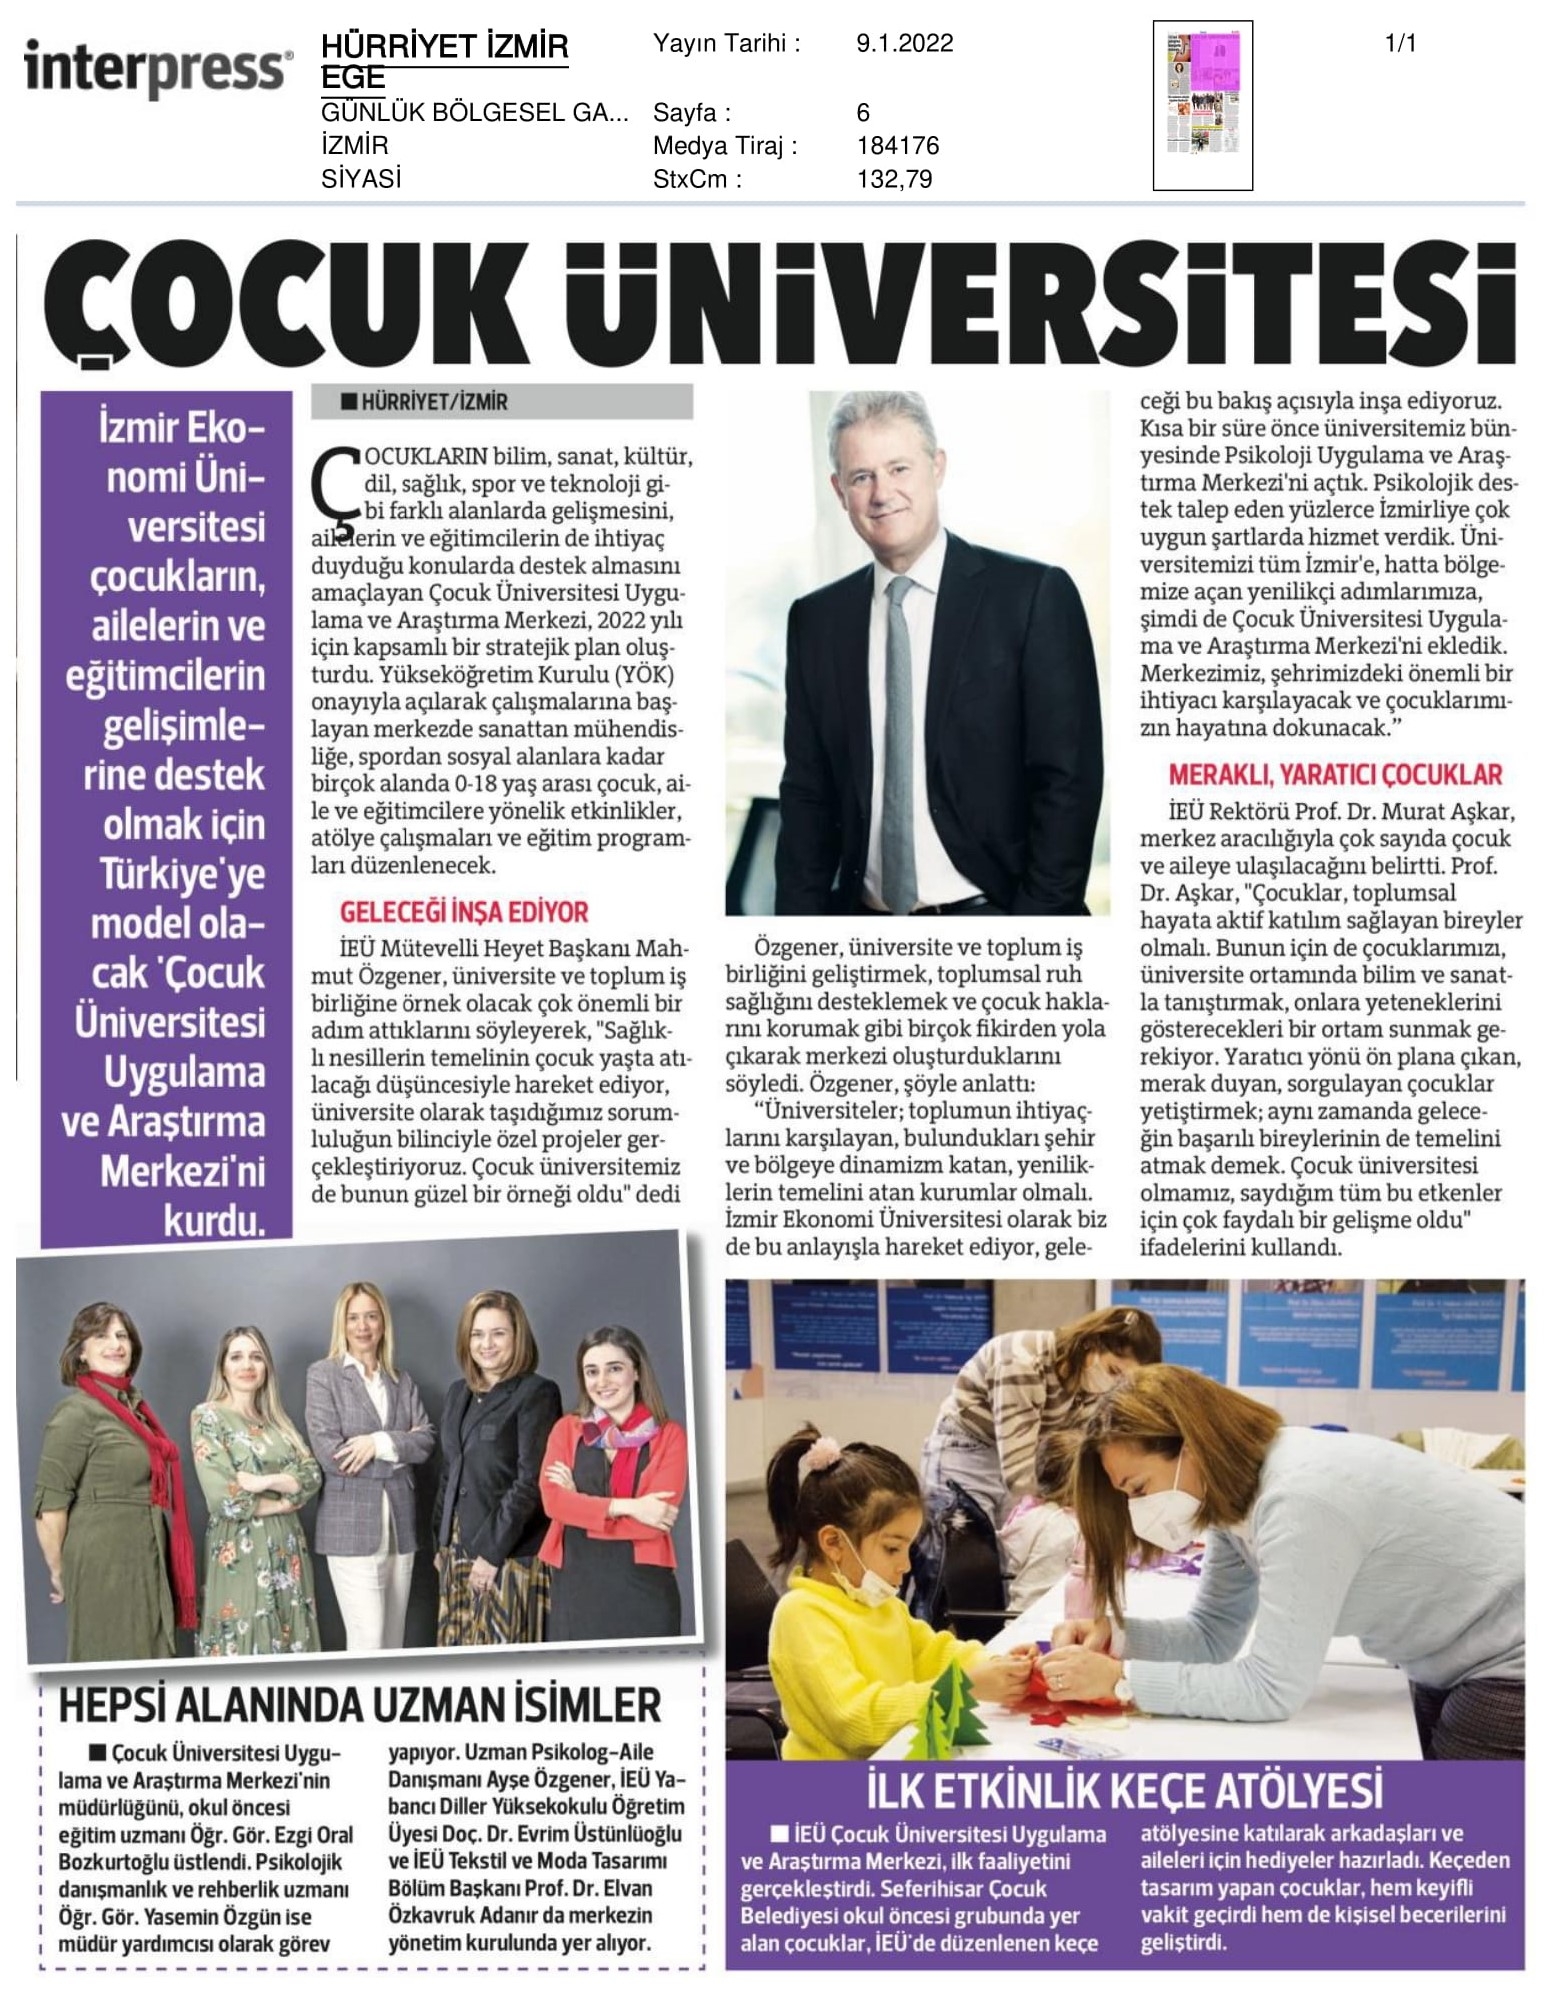 İzmir’e ‘çocuk’ üniversitesi